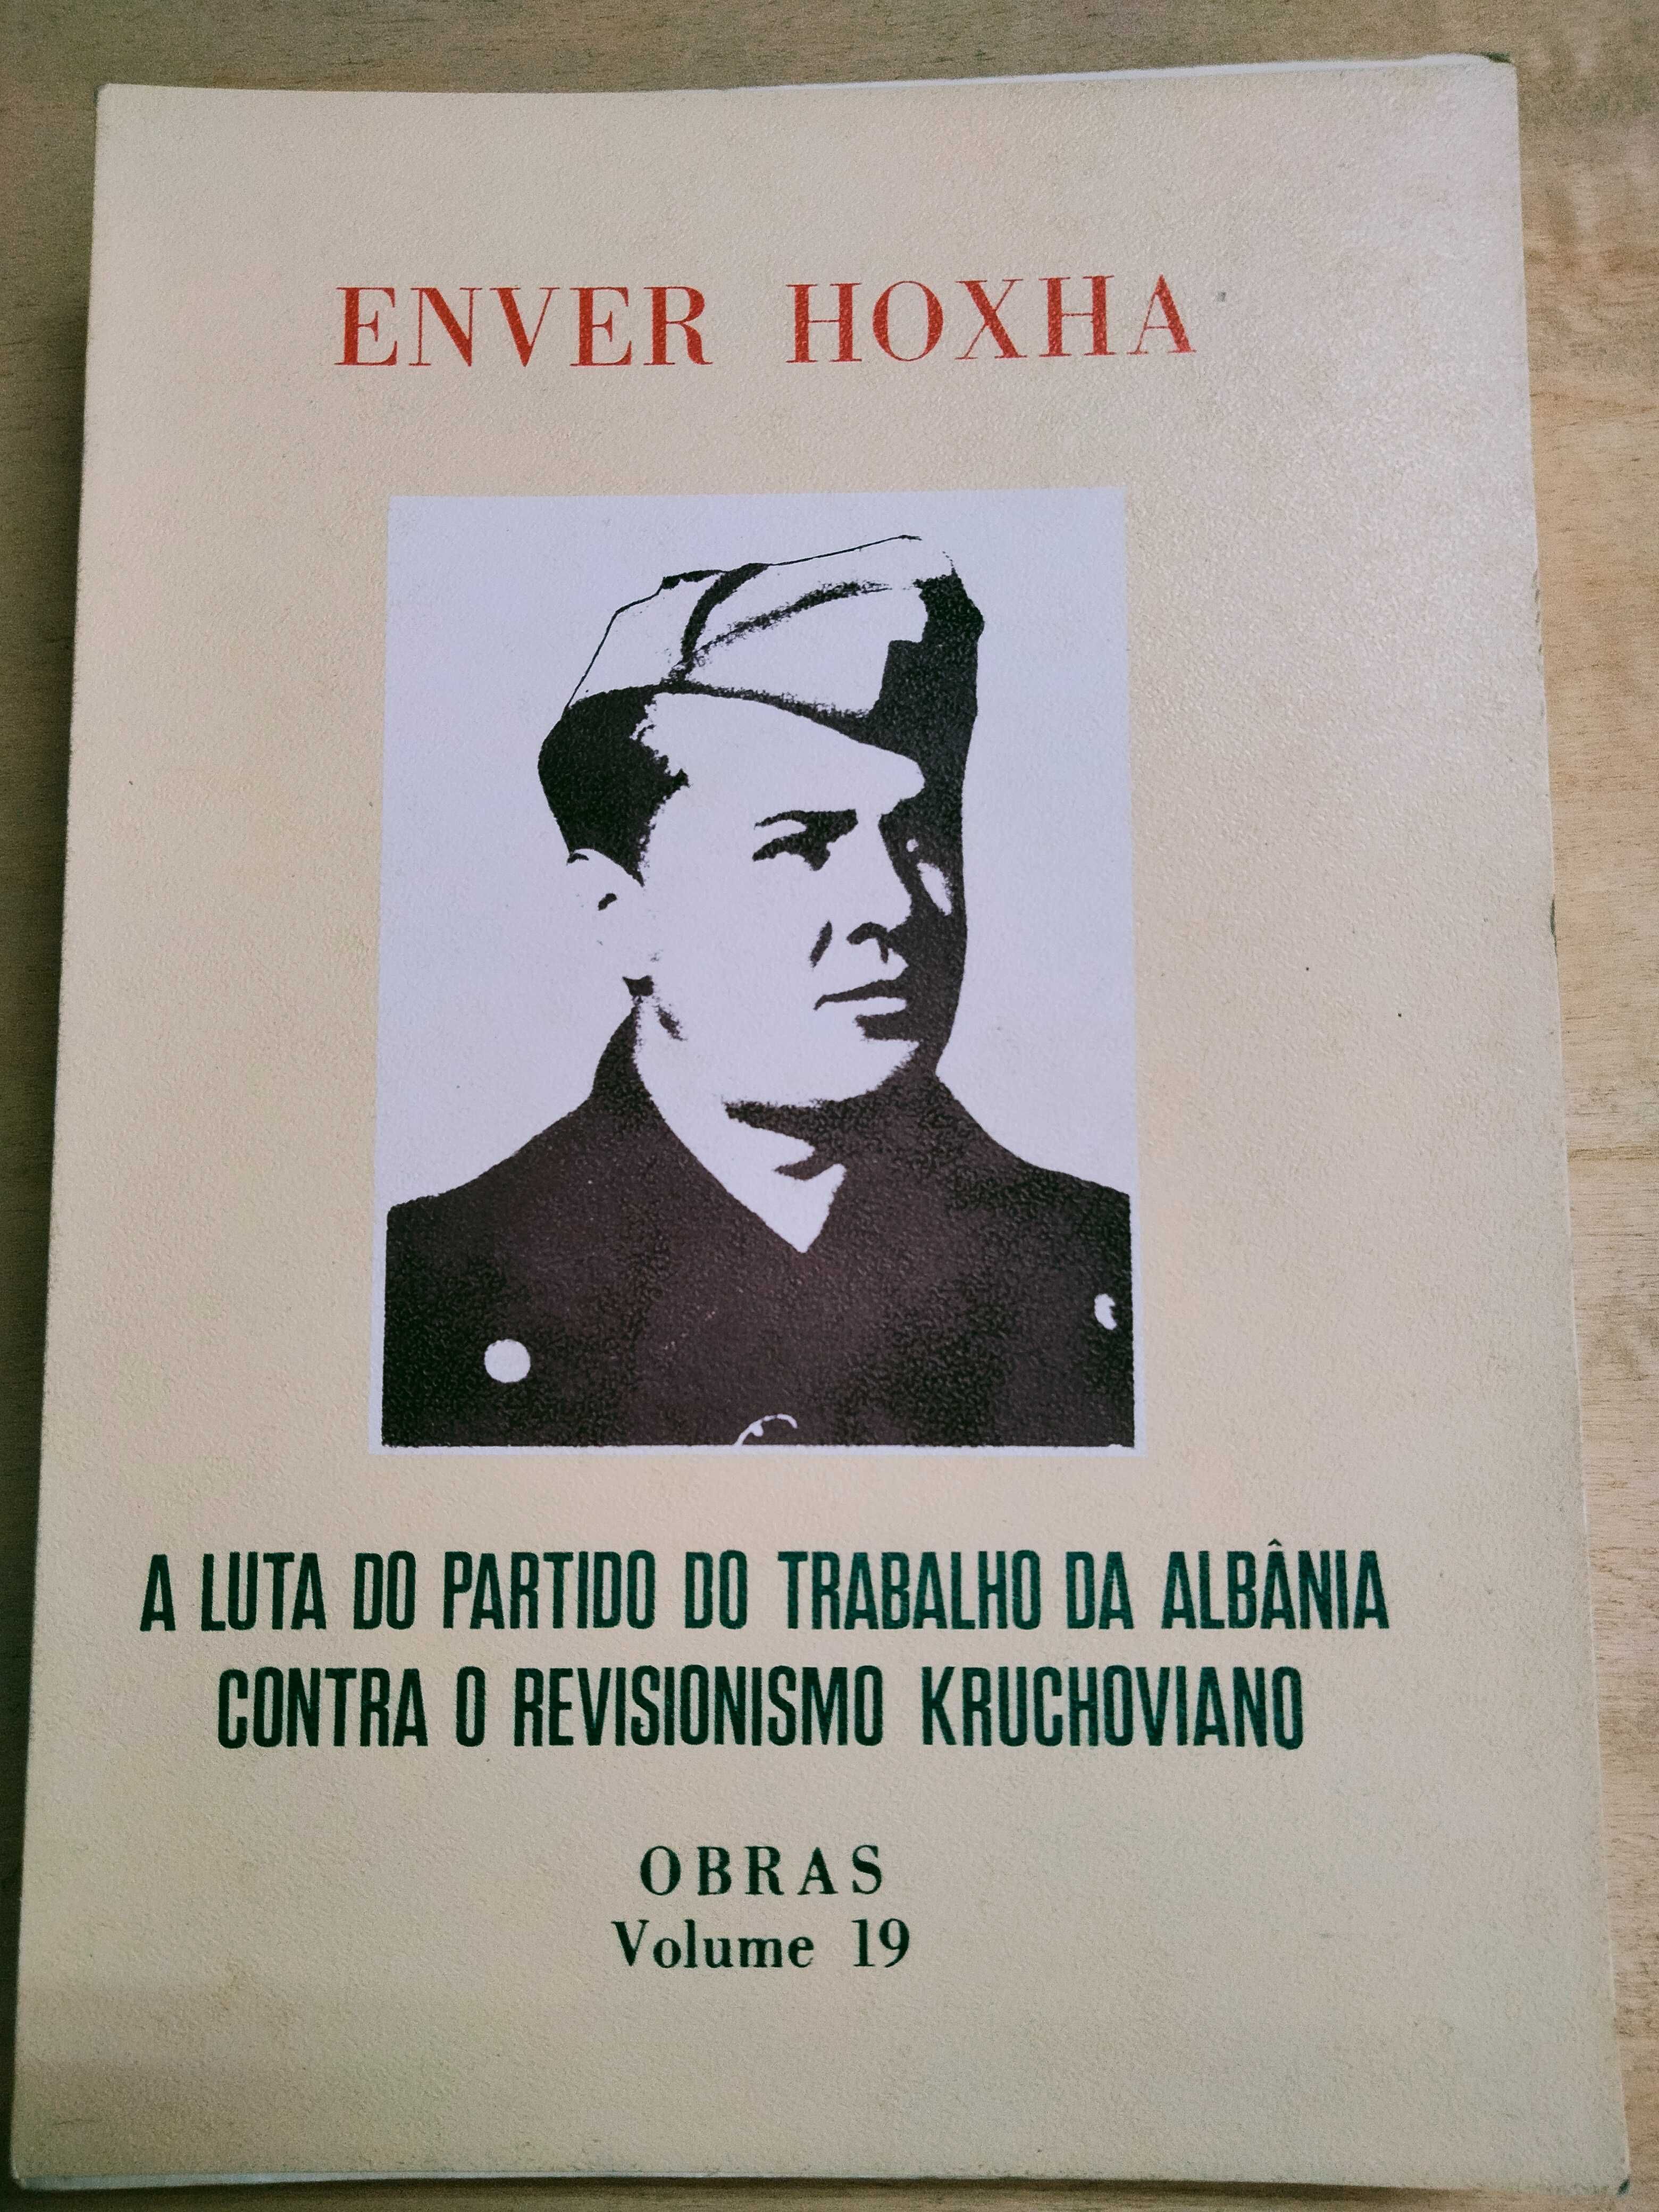 A Luta do Partido do Trabalho da Albânia - Enver Hoxha